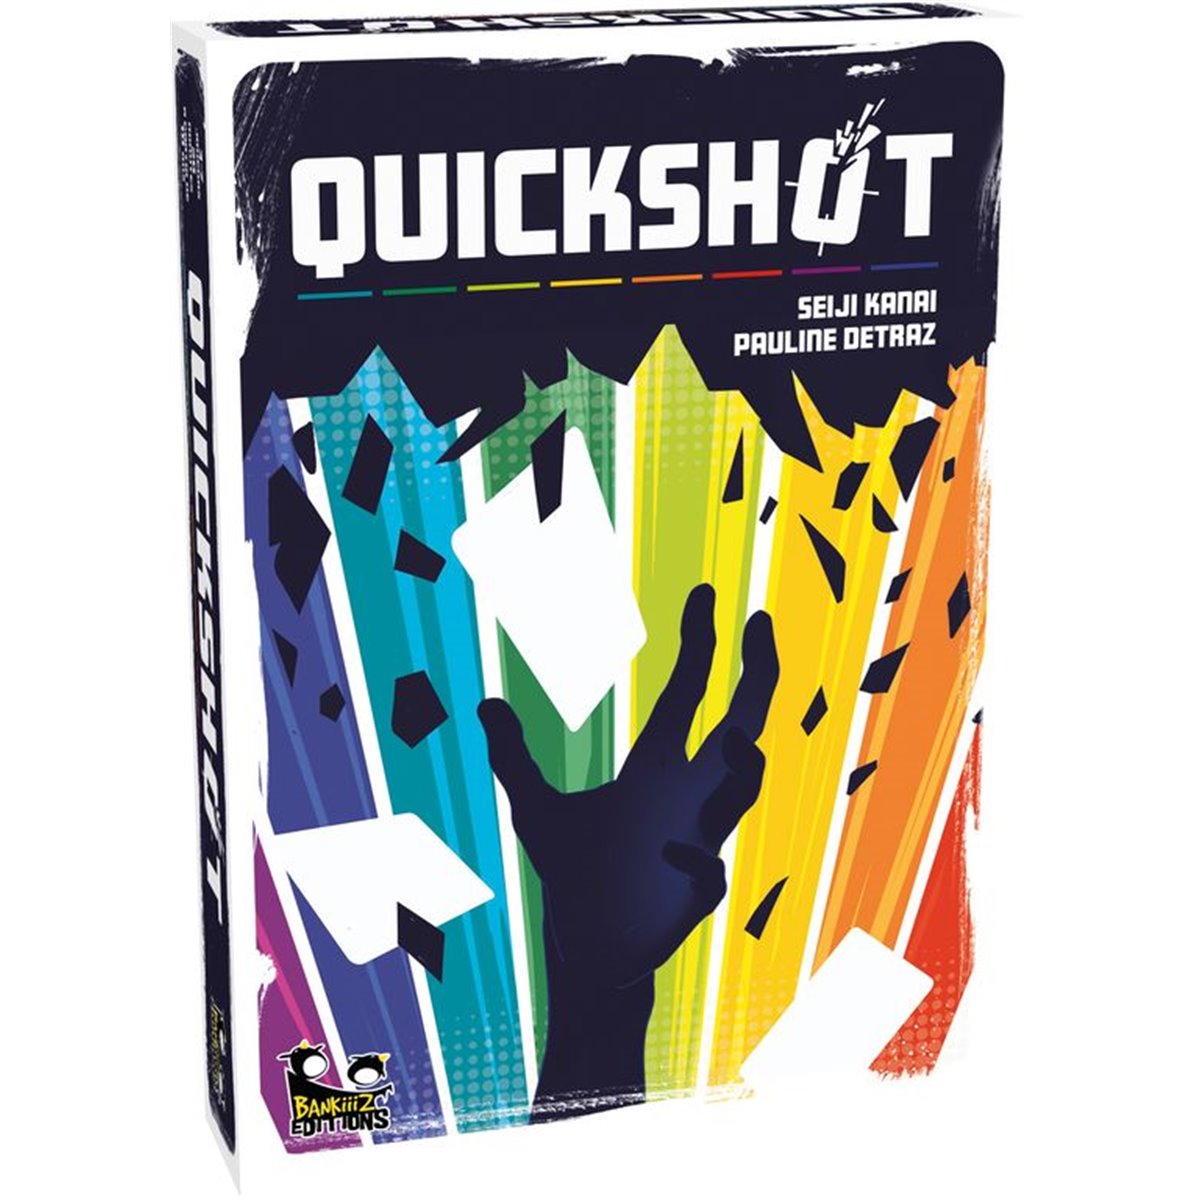 Quickshot® additif pour essence moteur sport motorisé